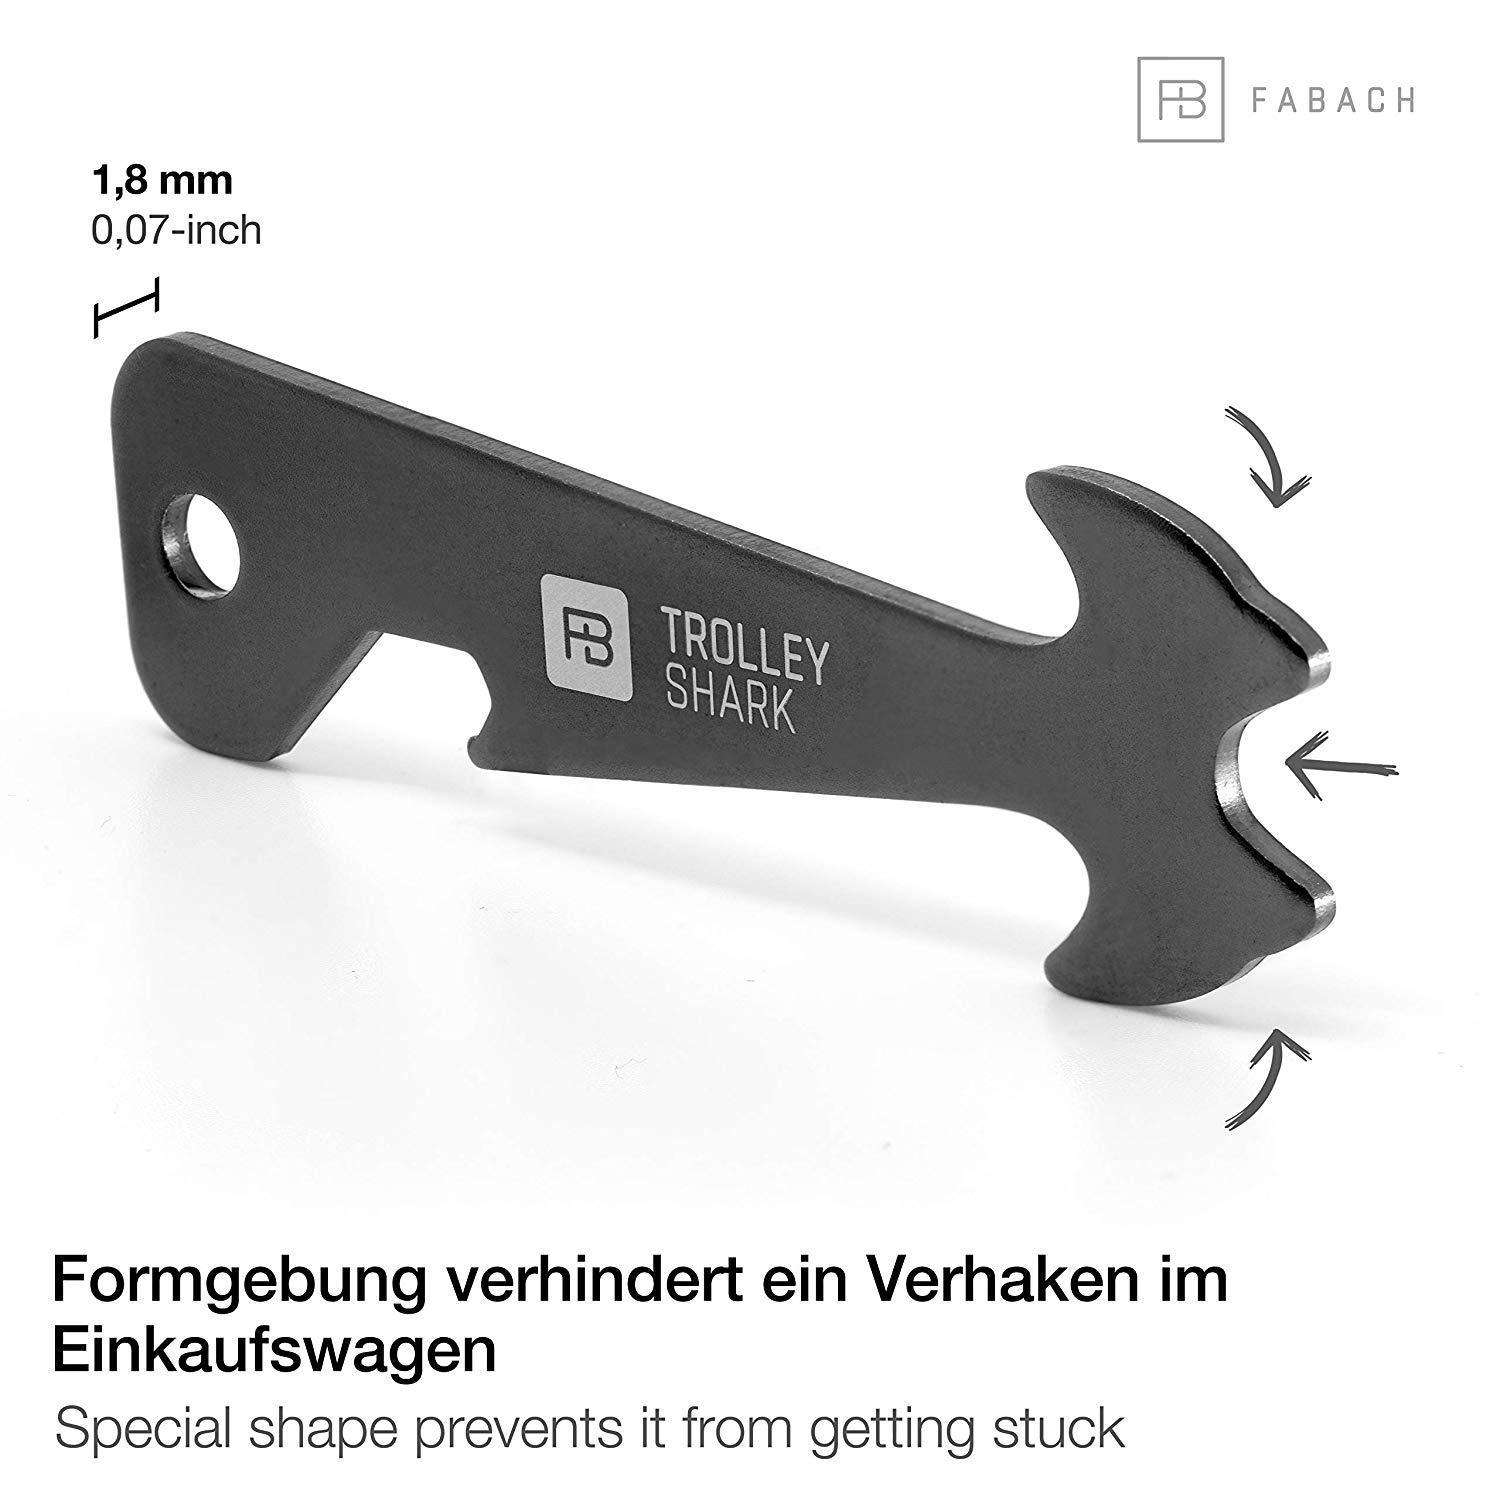 "Trolley Shark" (schwarz) Einkaufswagenlöser Schlüsselanhänger mit Flaschenöffner - FABACH